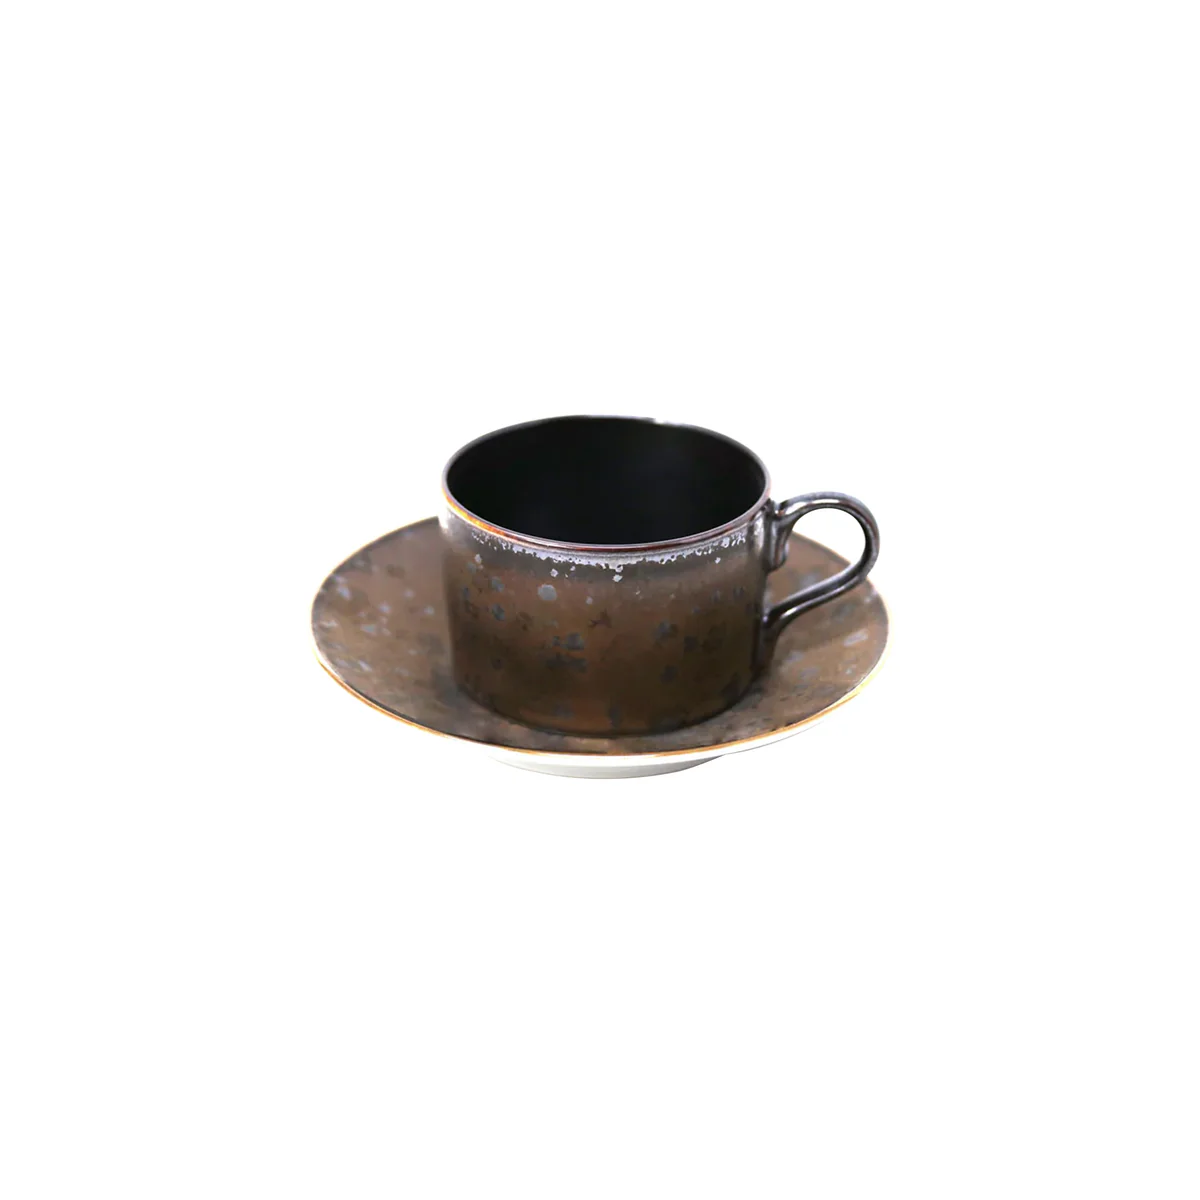 AGUIRRE - Tea set (cup & saucer)